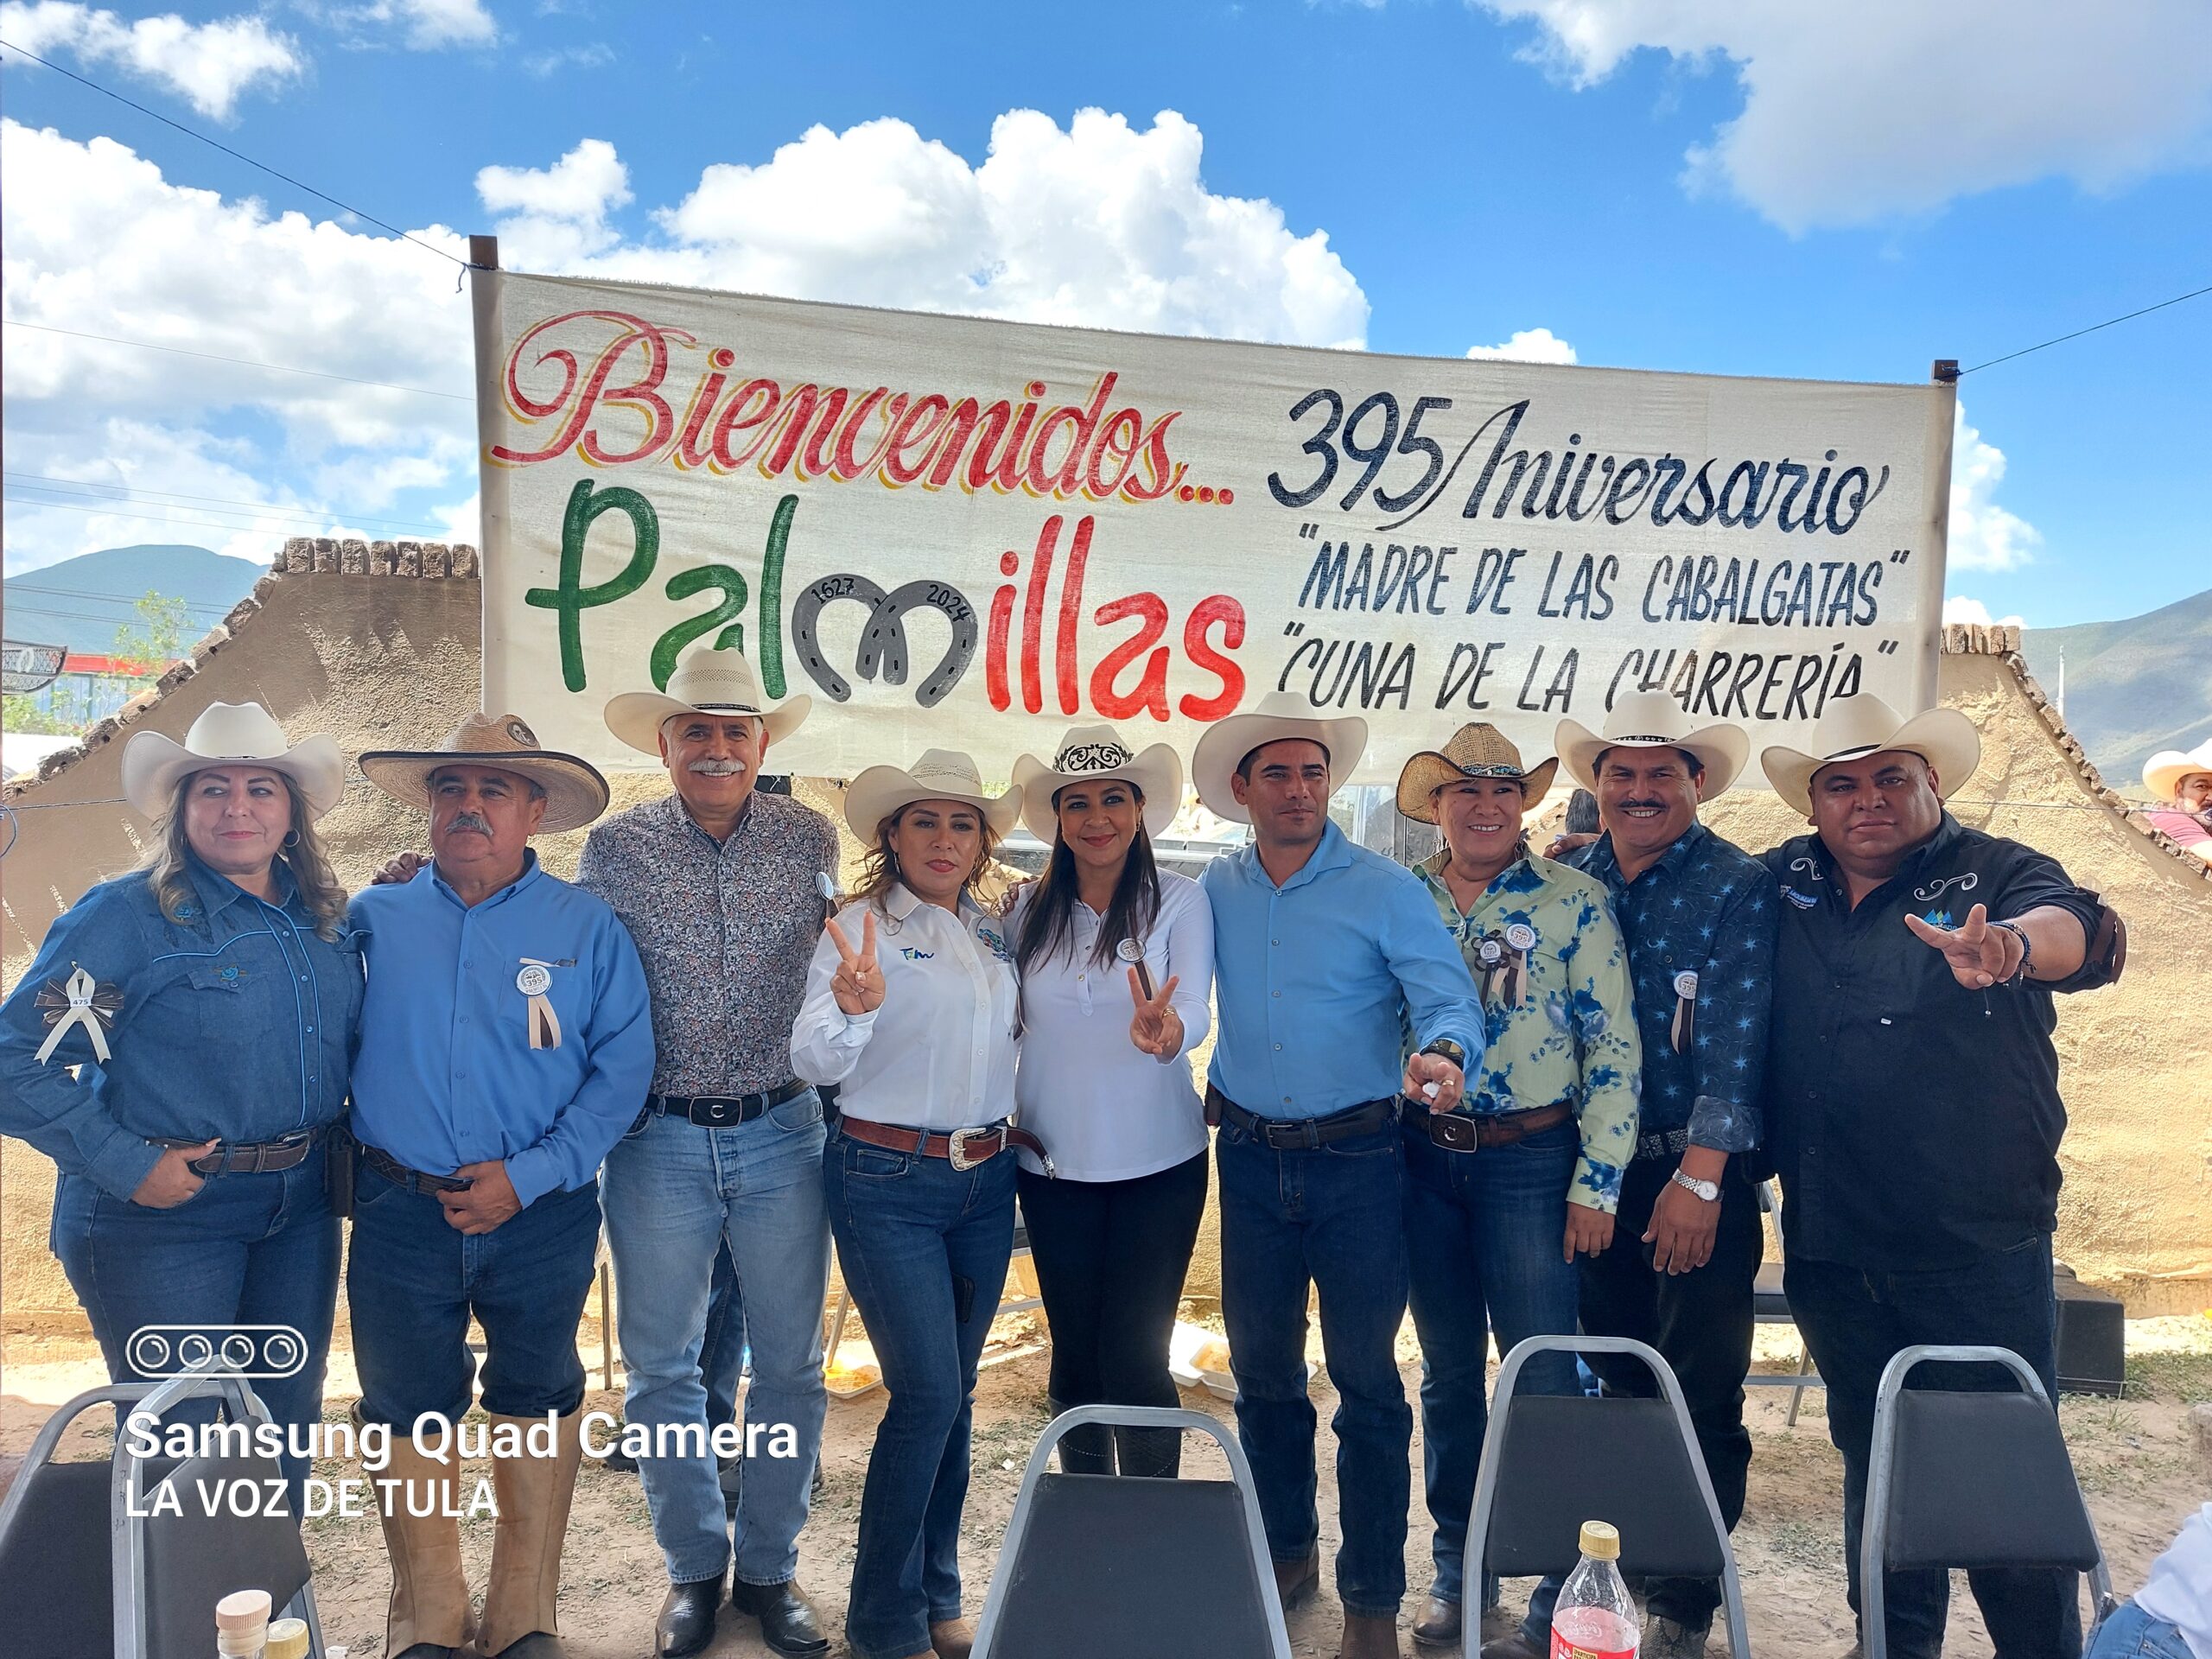 Con cabalgata, callejoneada y peregrinación, conmemoran el 395 aniversario de la fundación de Palmillas